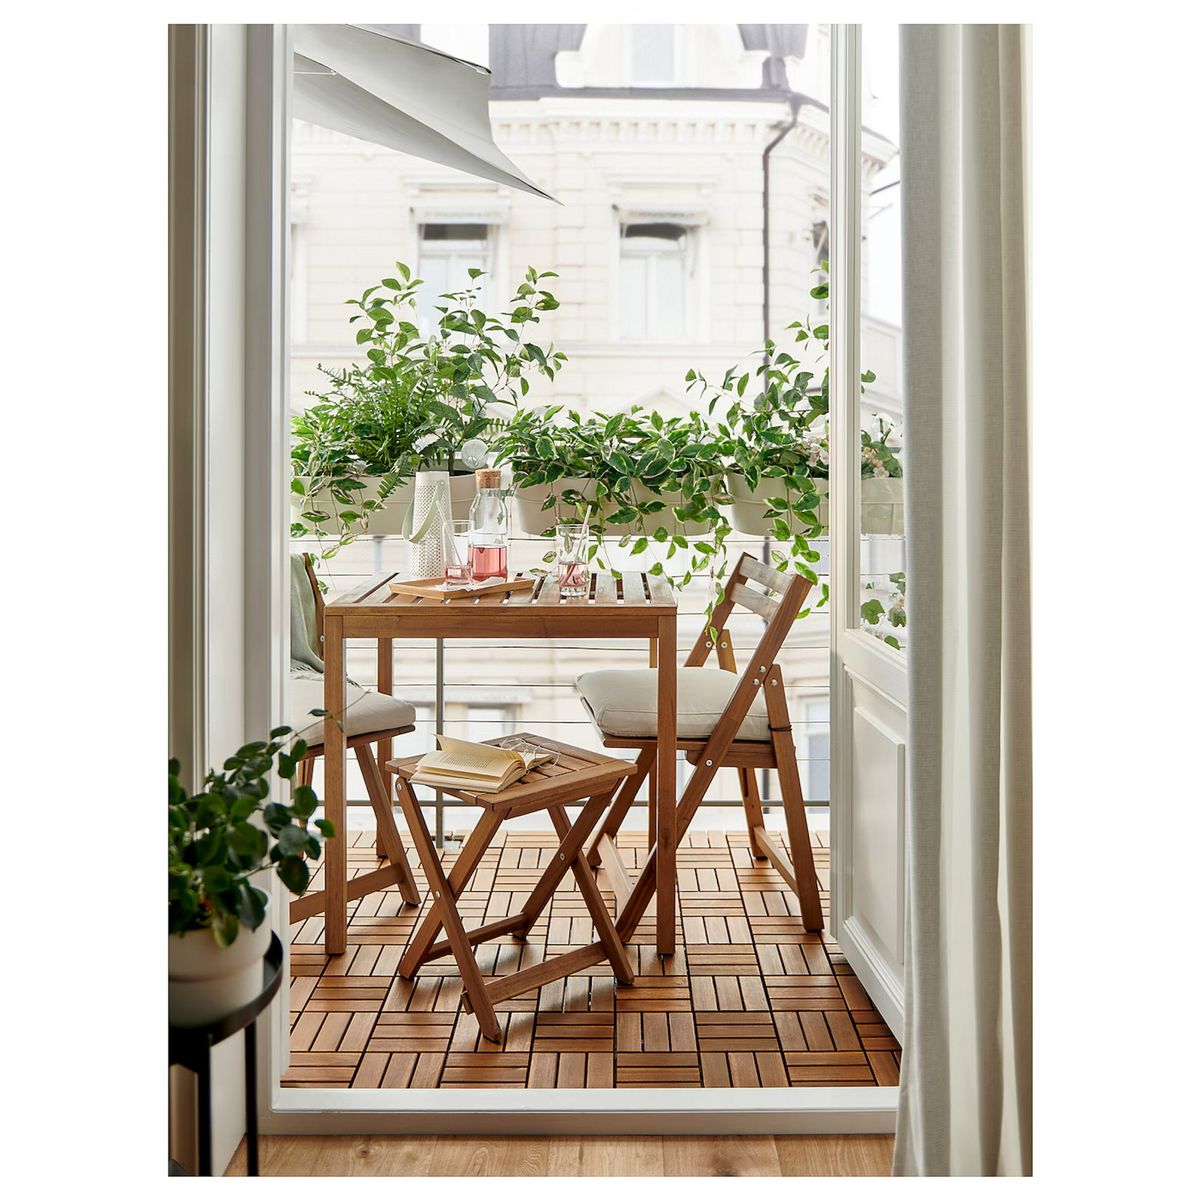 este asiento de ikea por menos de 20 € es la solución perfecta para decorar con estilo terrazas pequeñas